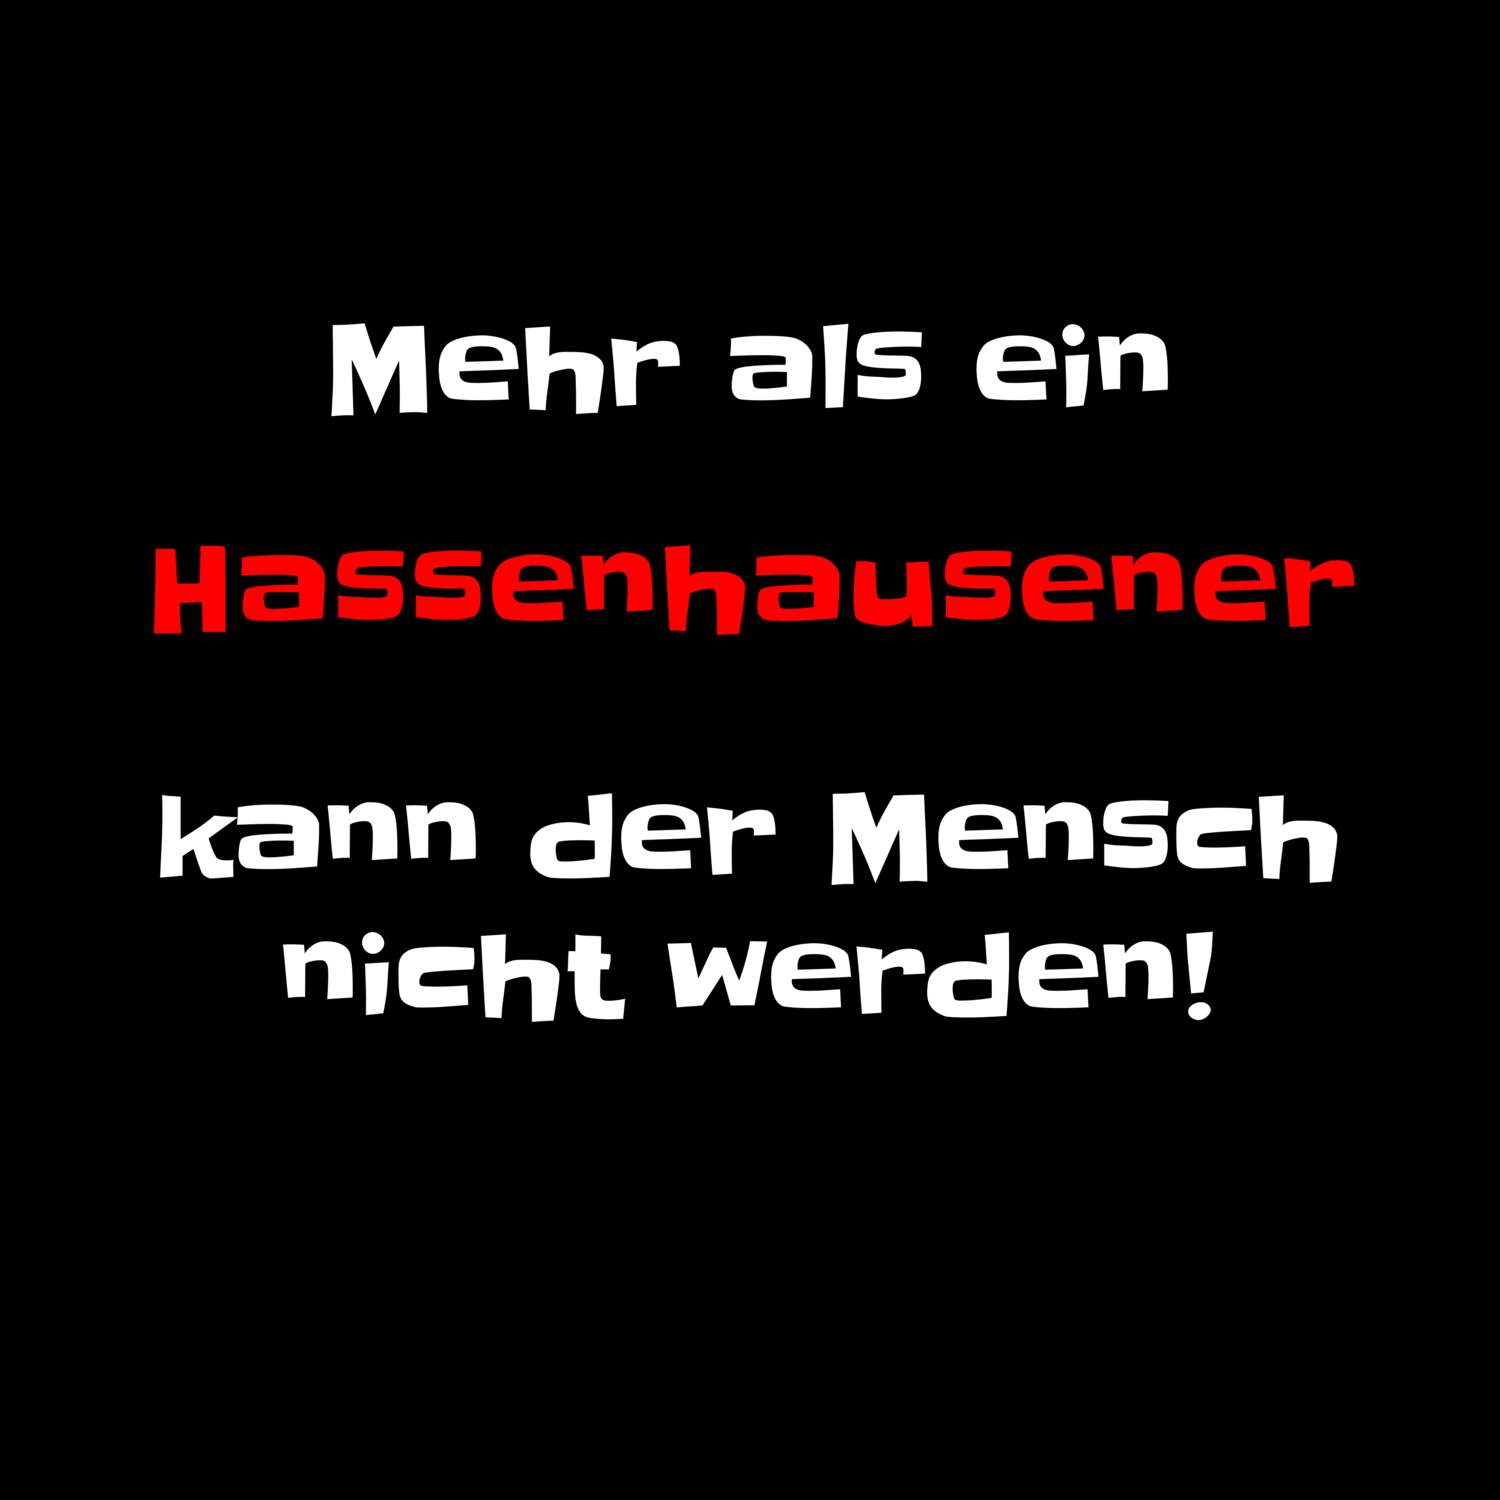 Hassenhausen T-Shirt »Mehr als ein«